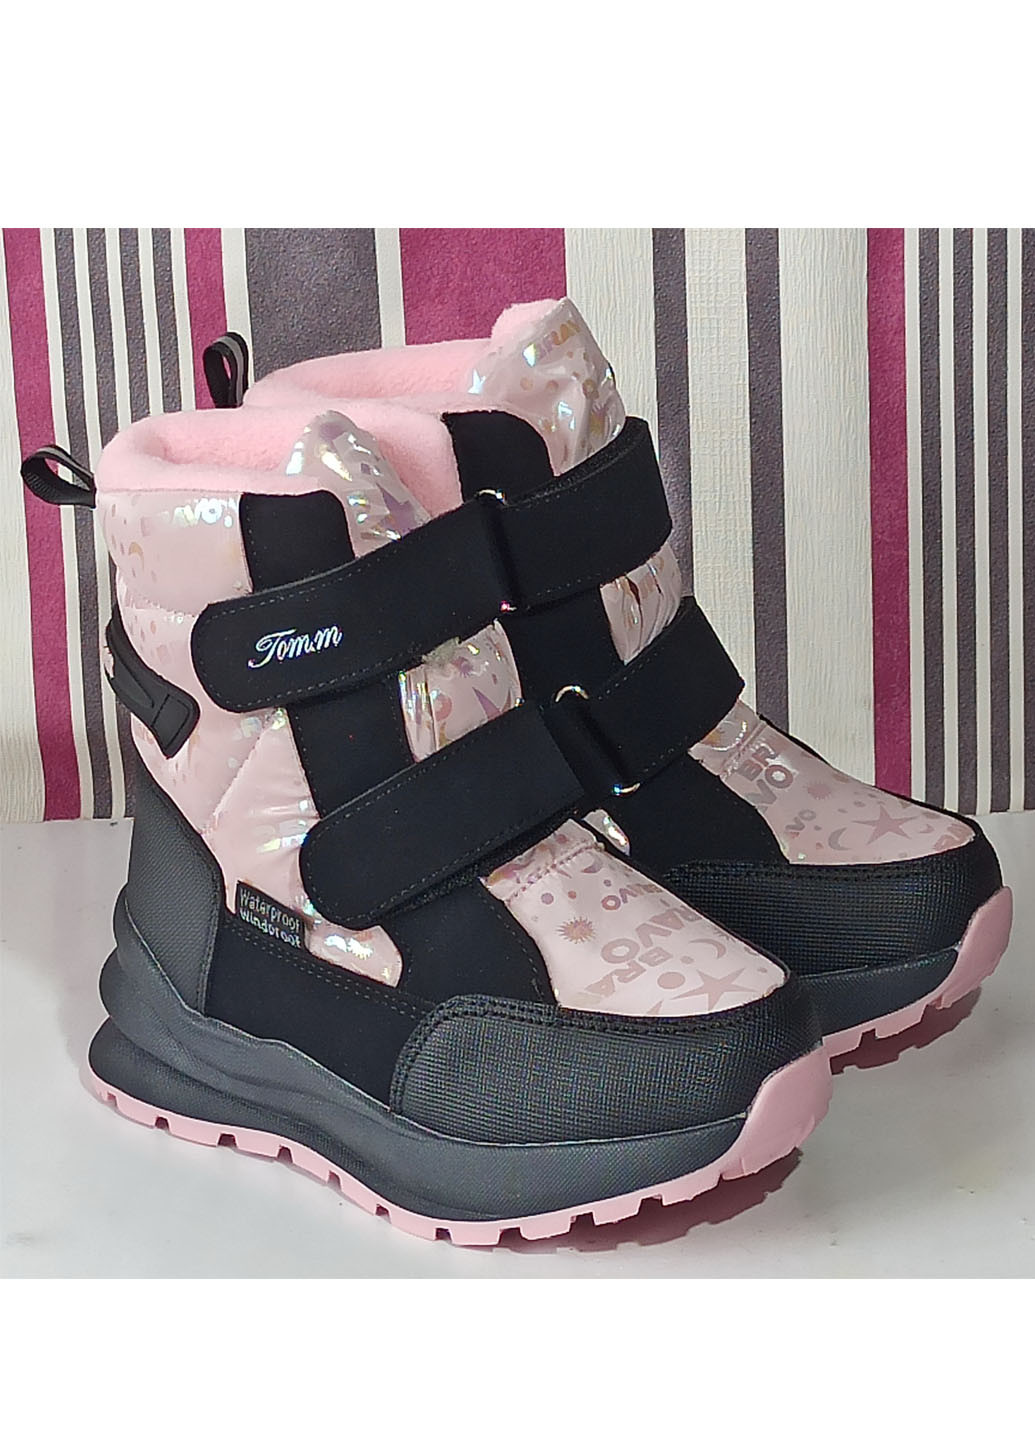 Розовые повседневные зимние детские зимние ботинки для девочки на овчине 10789w 28-18см 30-19,5см 31-20см Tom.M